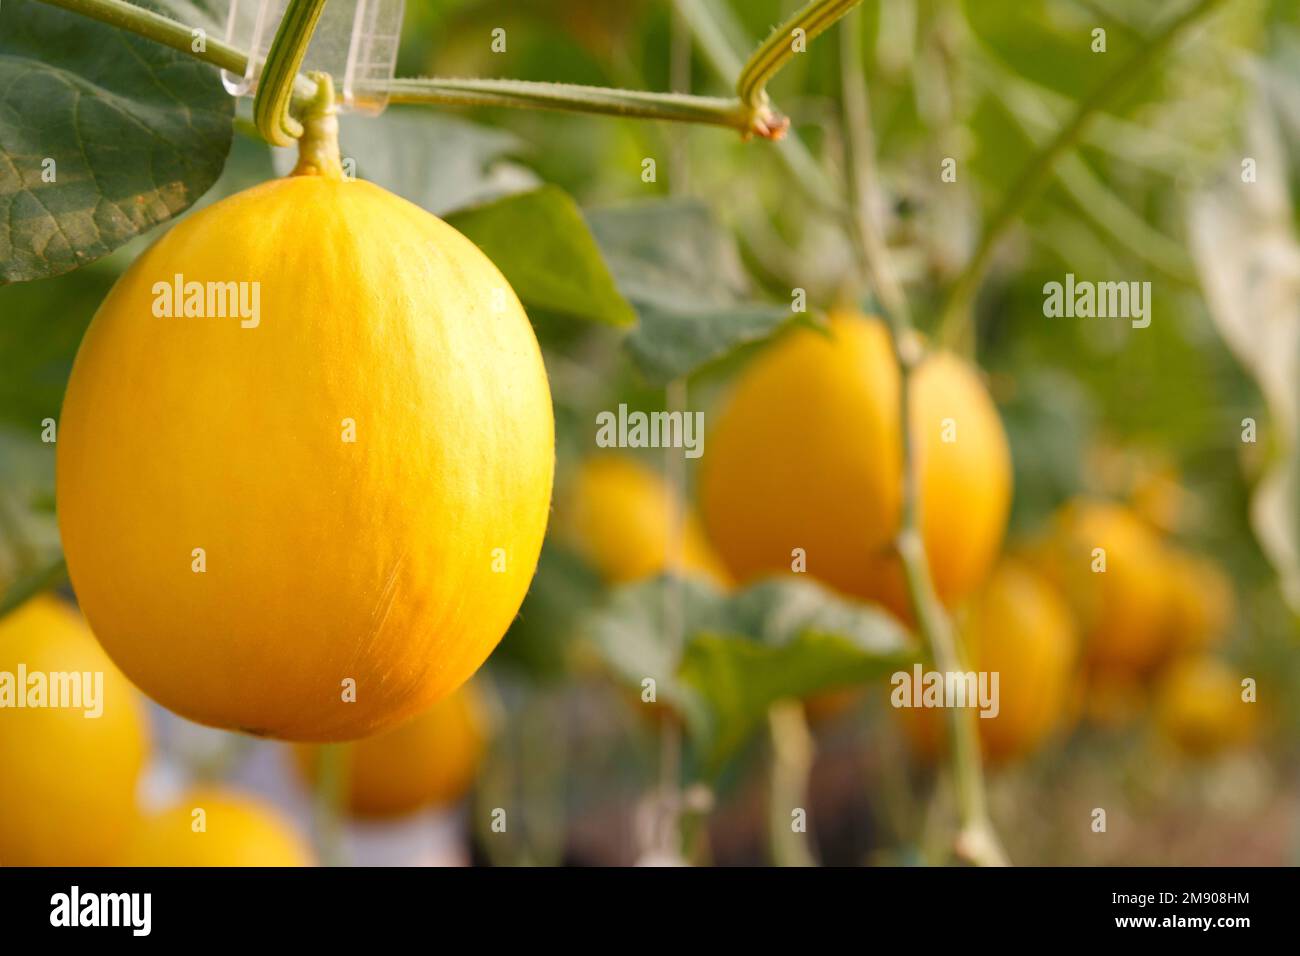 Frische gelbe Bio-Melone oder goldene Melone, die im Gewächshaus der Melonenfarm geerntet werden kann. Konzept Landwirtschaft und Obstbetrieb Stockfoto